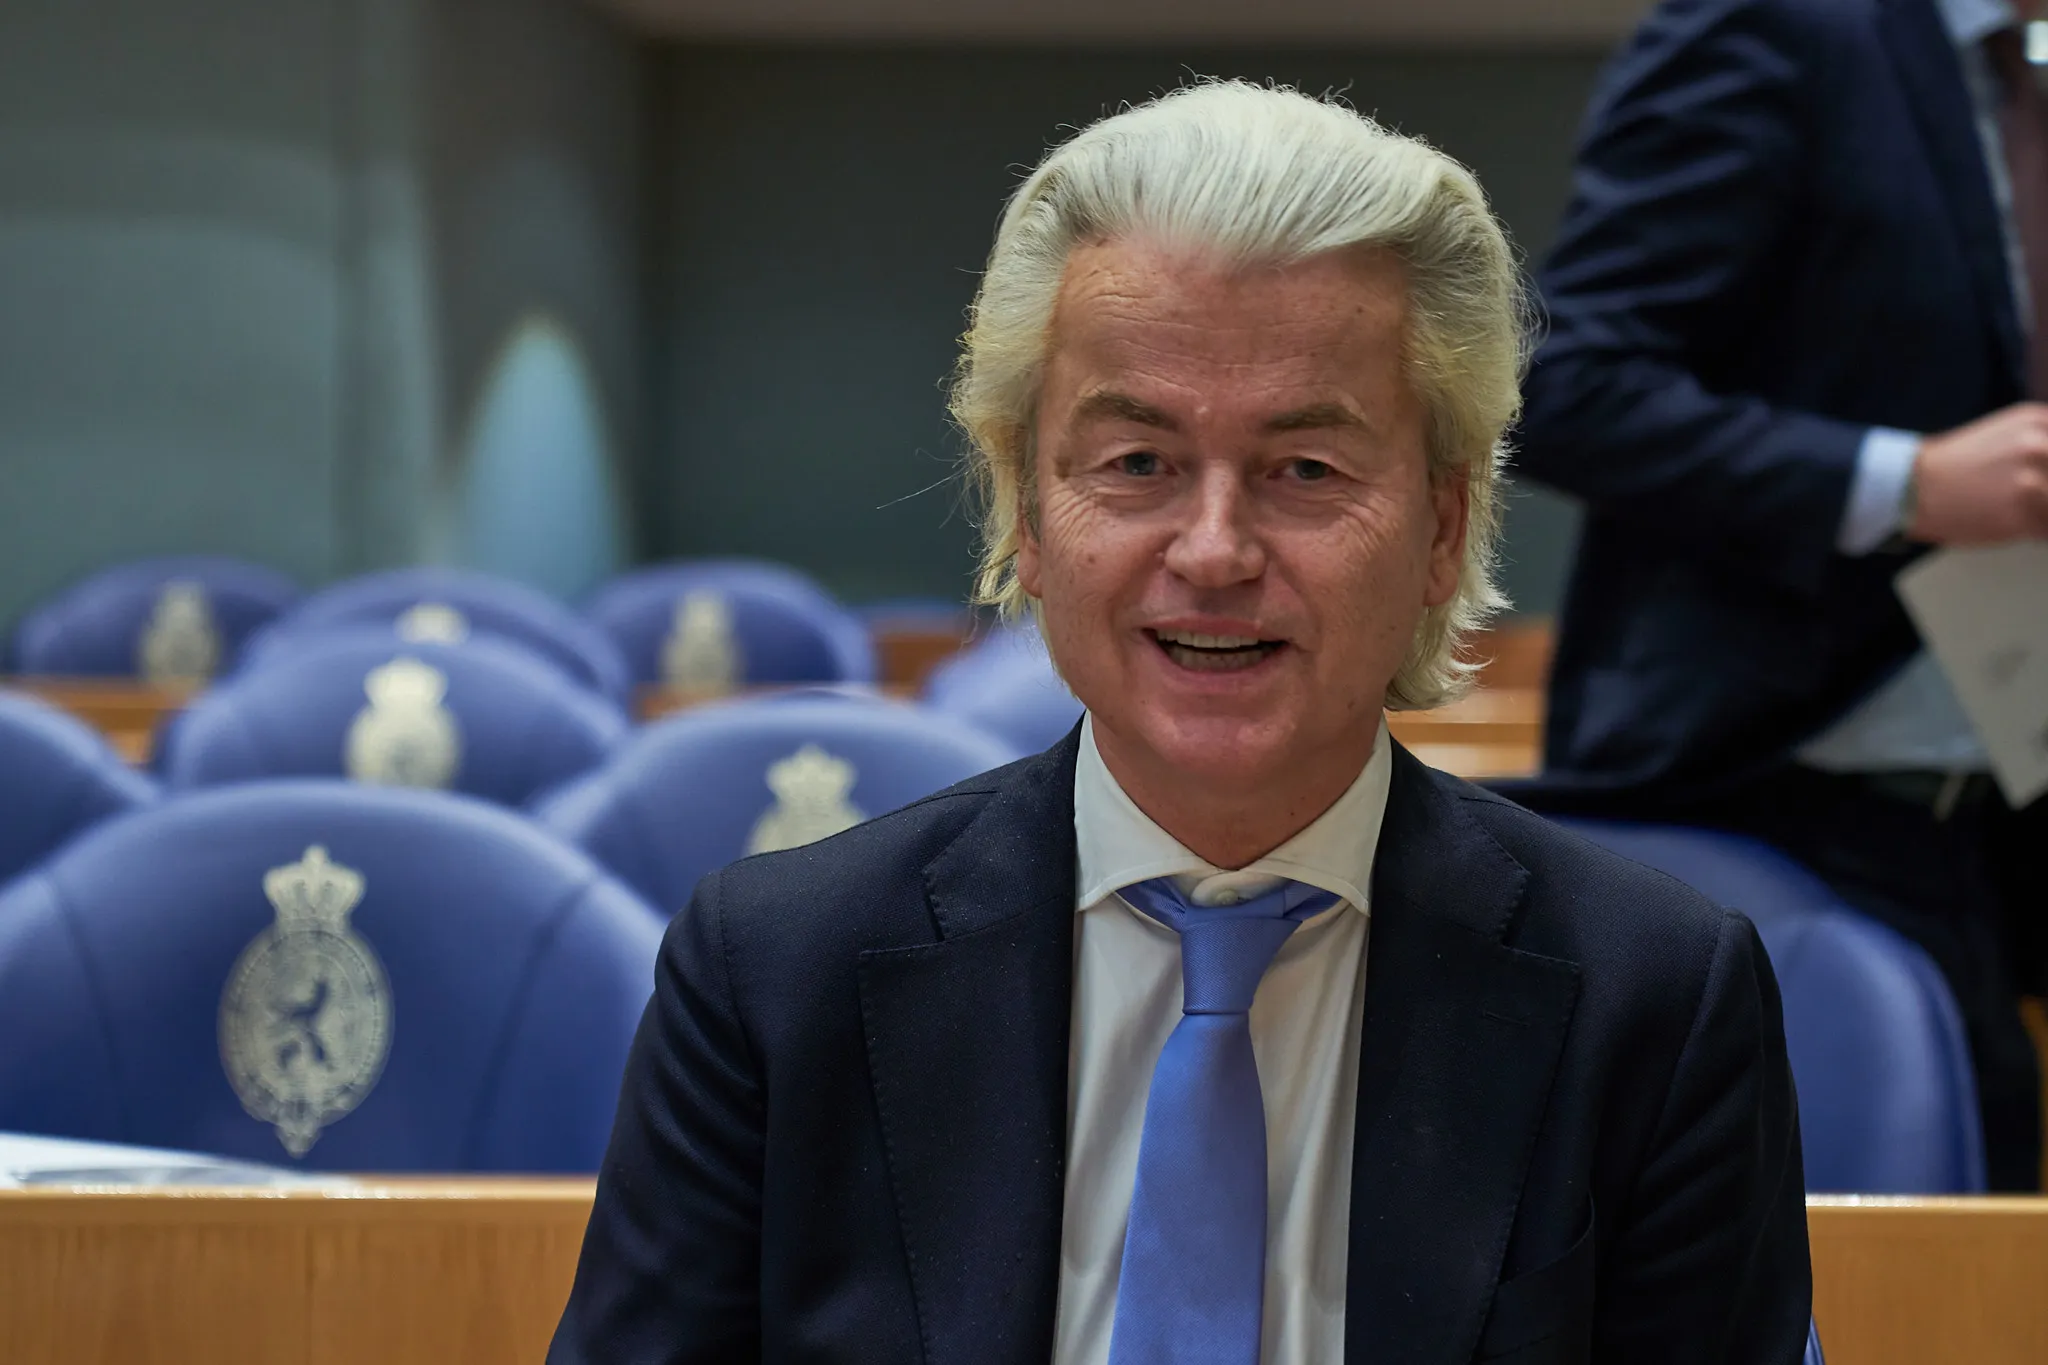 20220125 Tweede Kamer Geert Wilders PVV 1